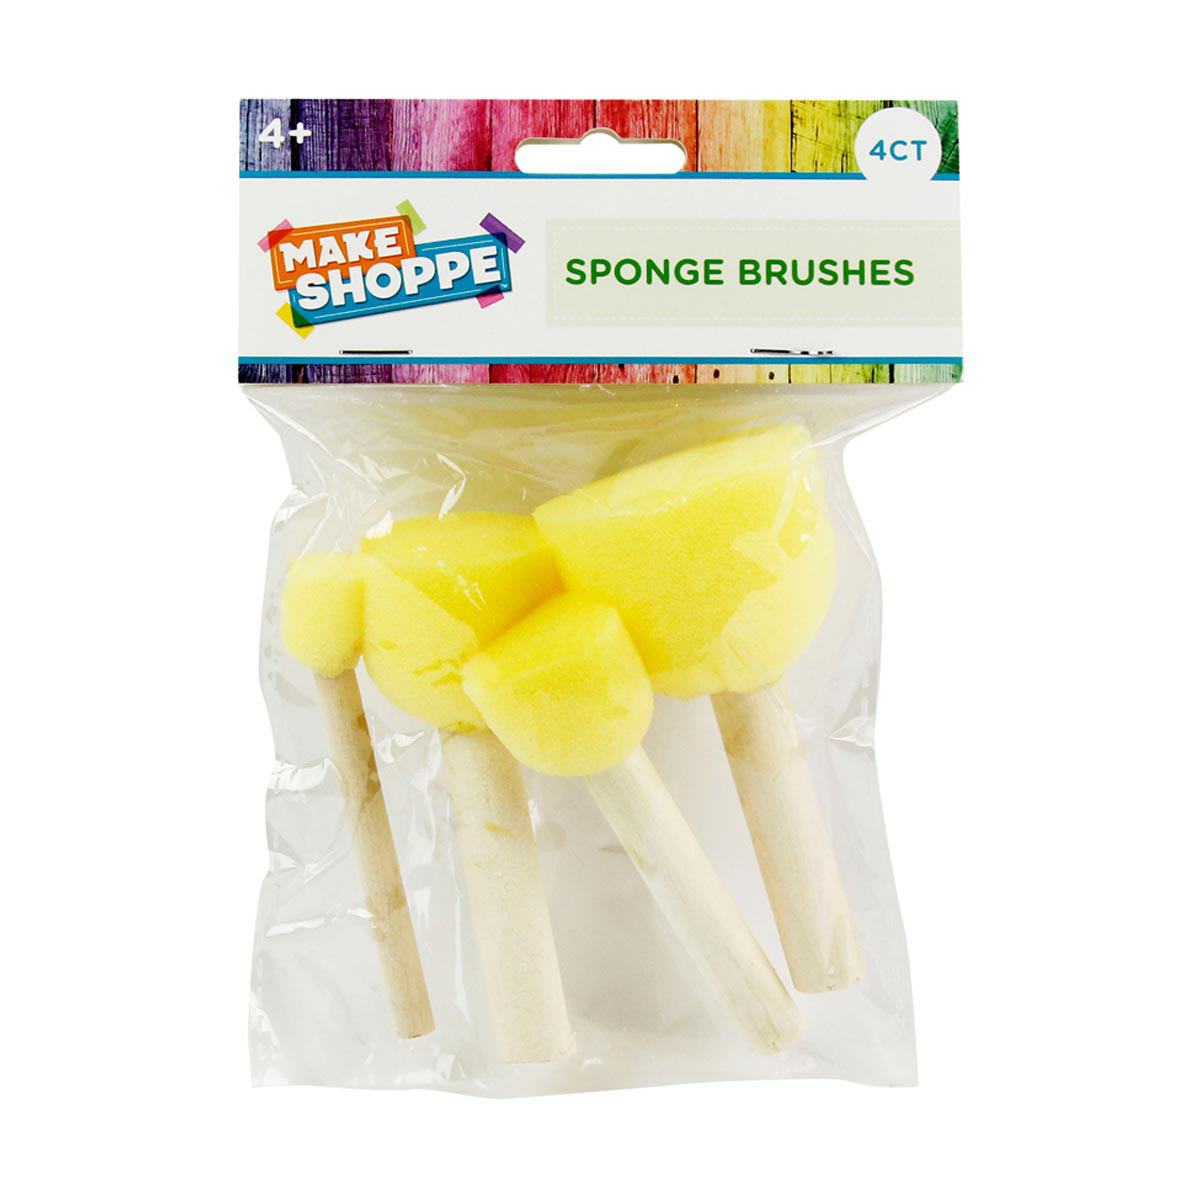 Make Shoppe Round Wood Sponge Brushes, 4 Count